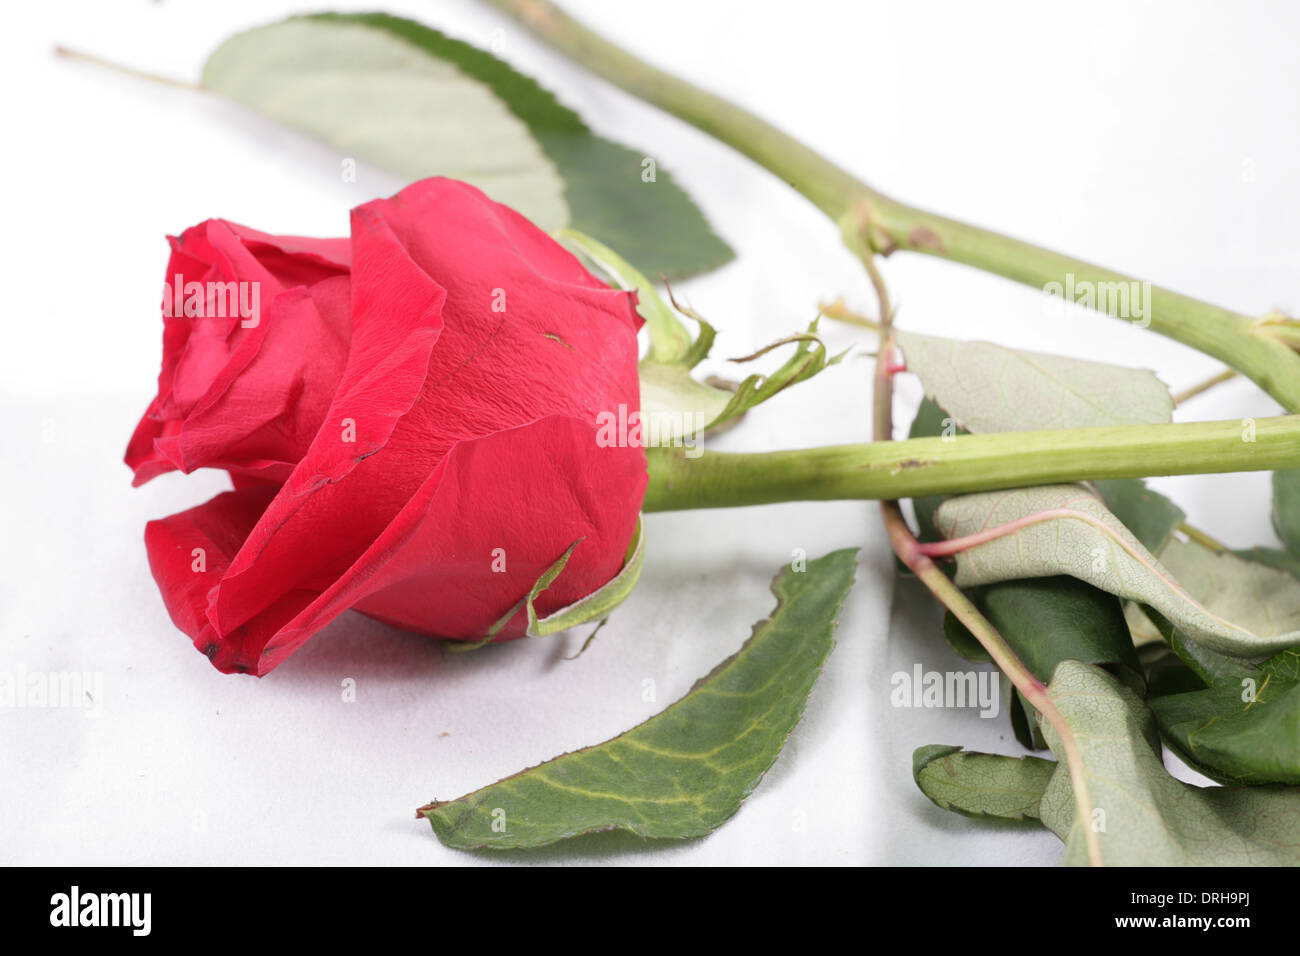 Plan macro sur une rose rouge flétri se jeta dans le plancher. Concept de la cessation de relation. Banque D'Images